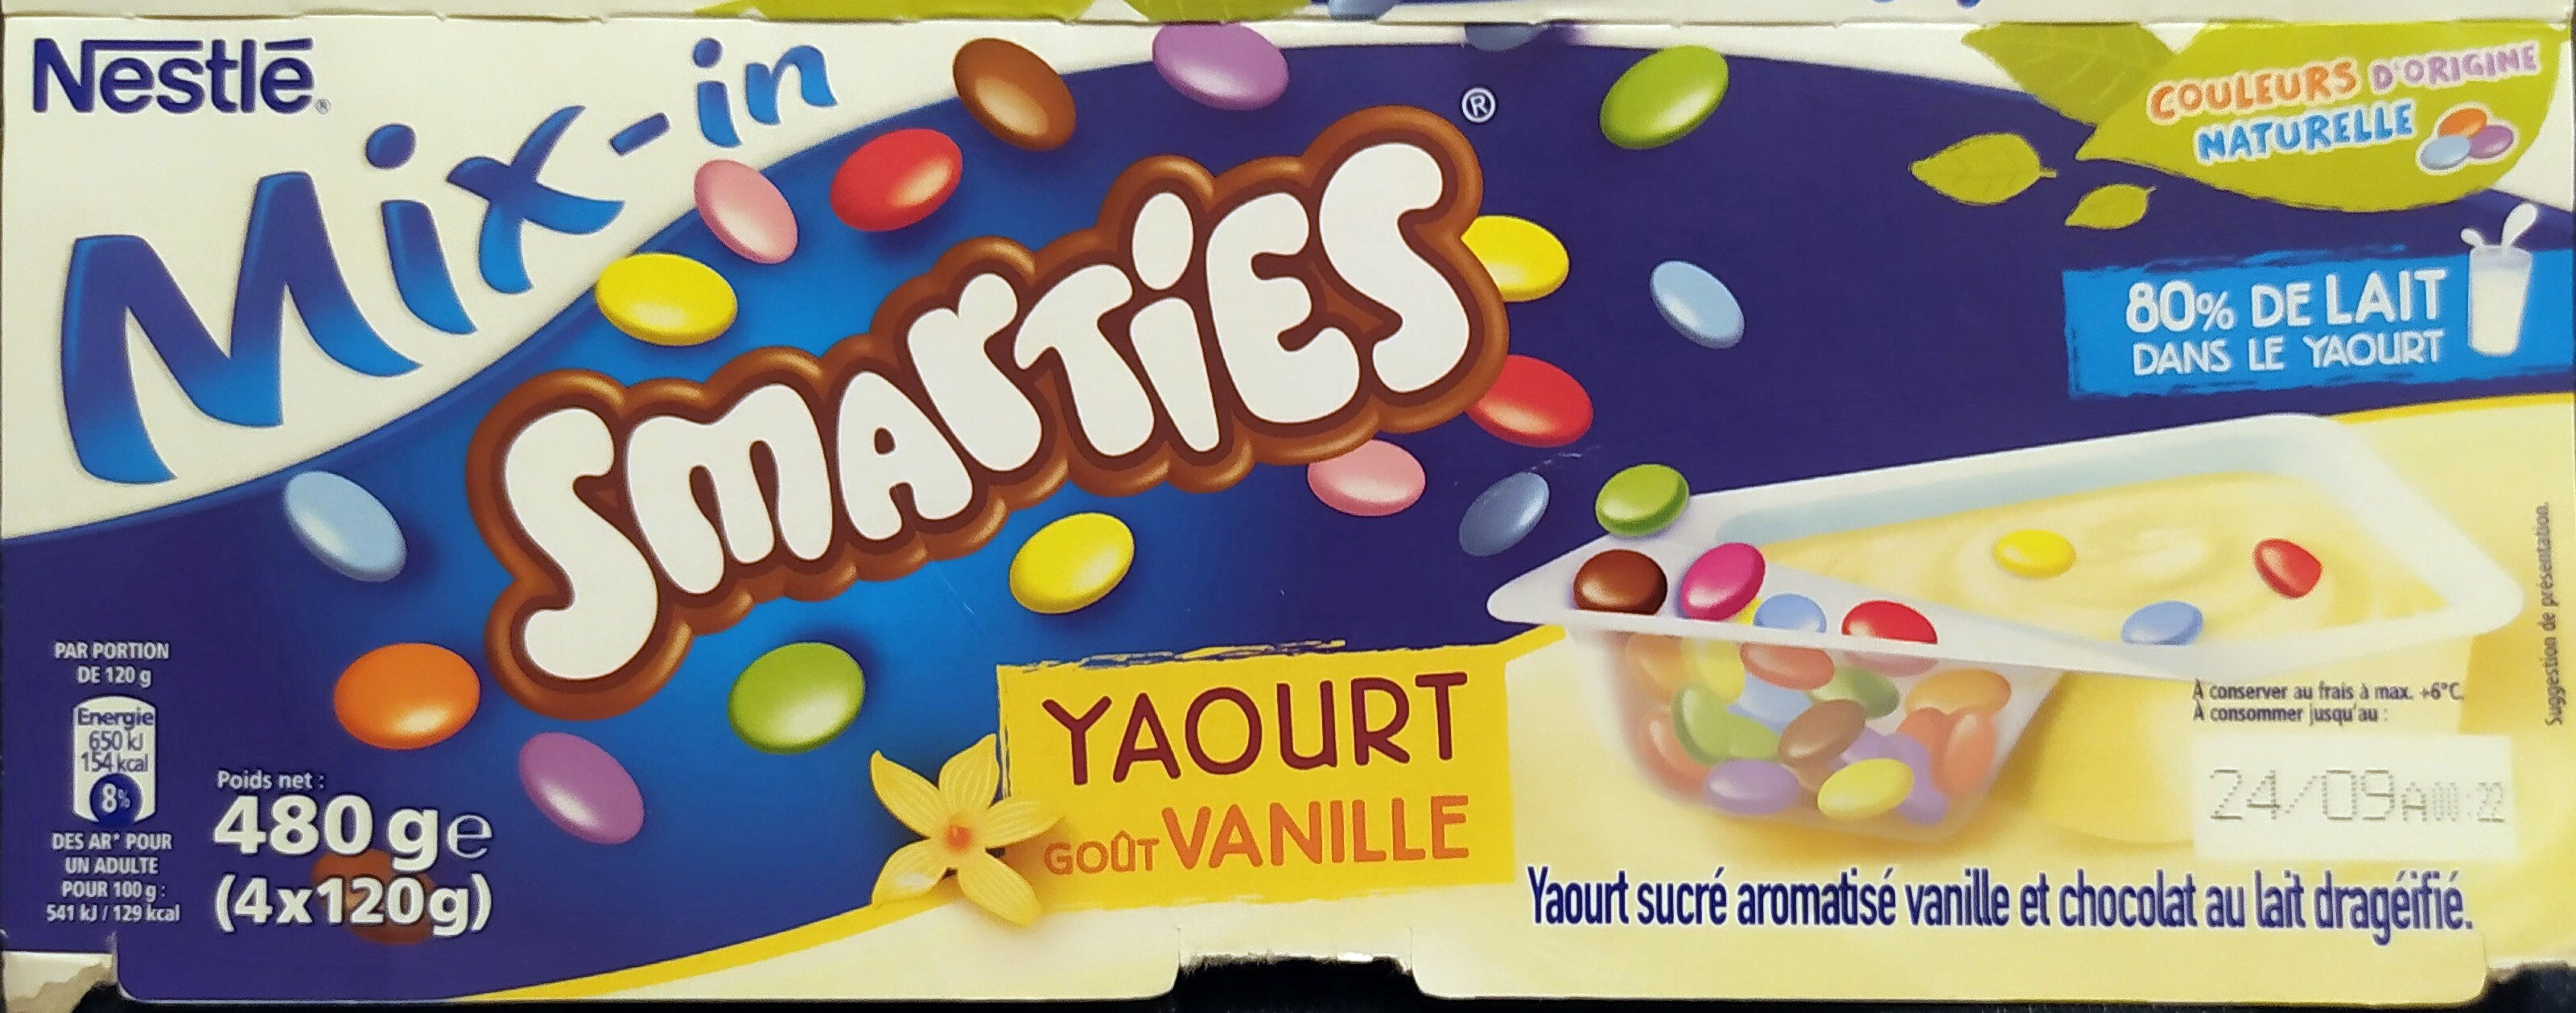 Nestlé Smarties yaourt à la vanille 4 x 120 g - Product - fr